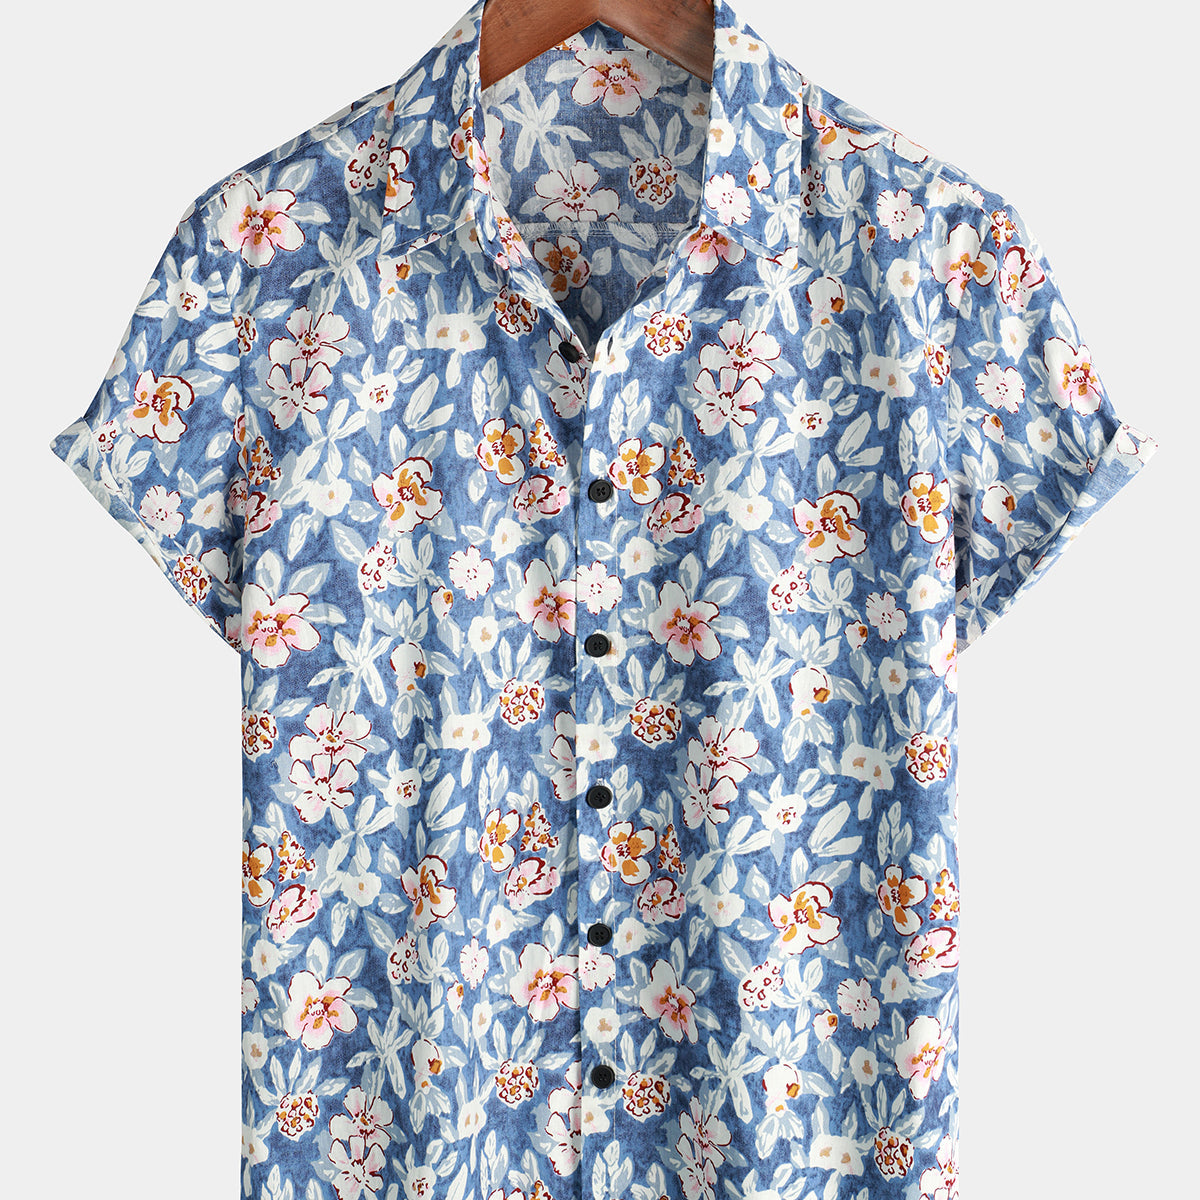 Men's Floral Print Vintage Blue Breathable Cotton Top Button Up Short Sleeve Shirt